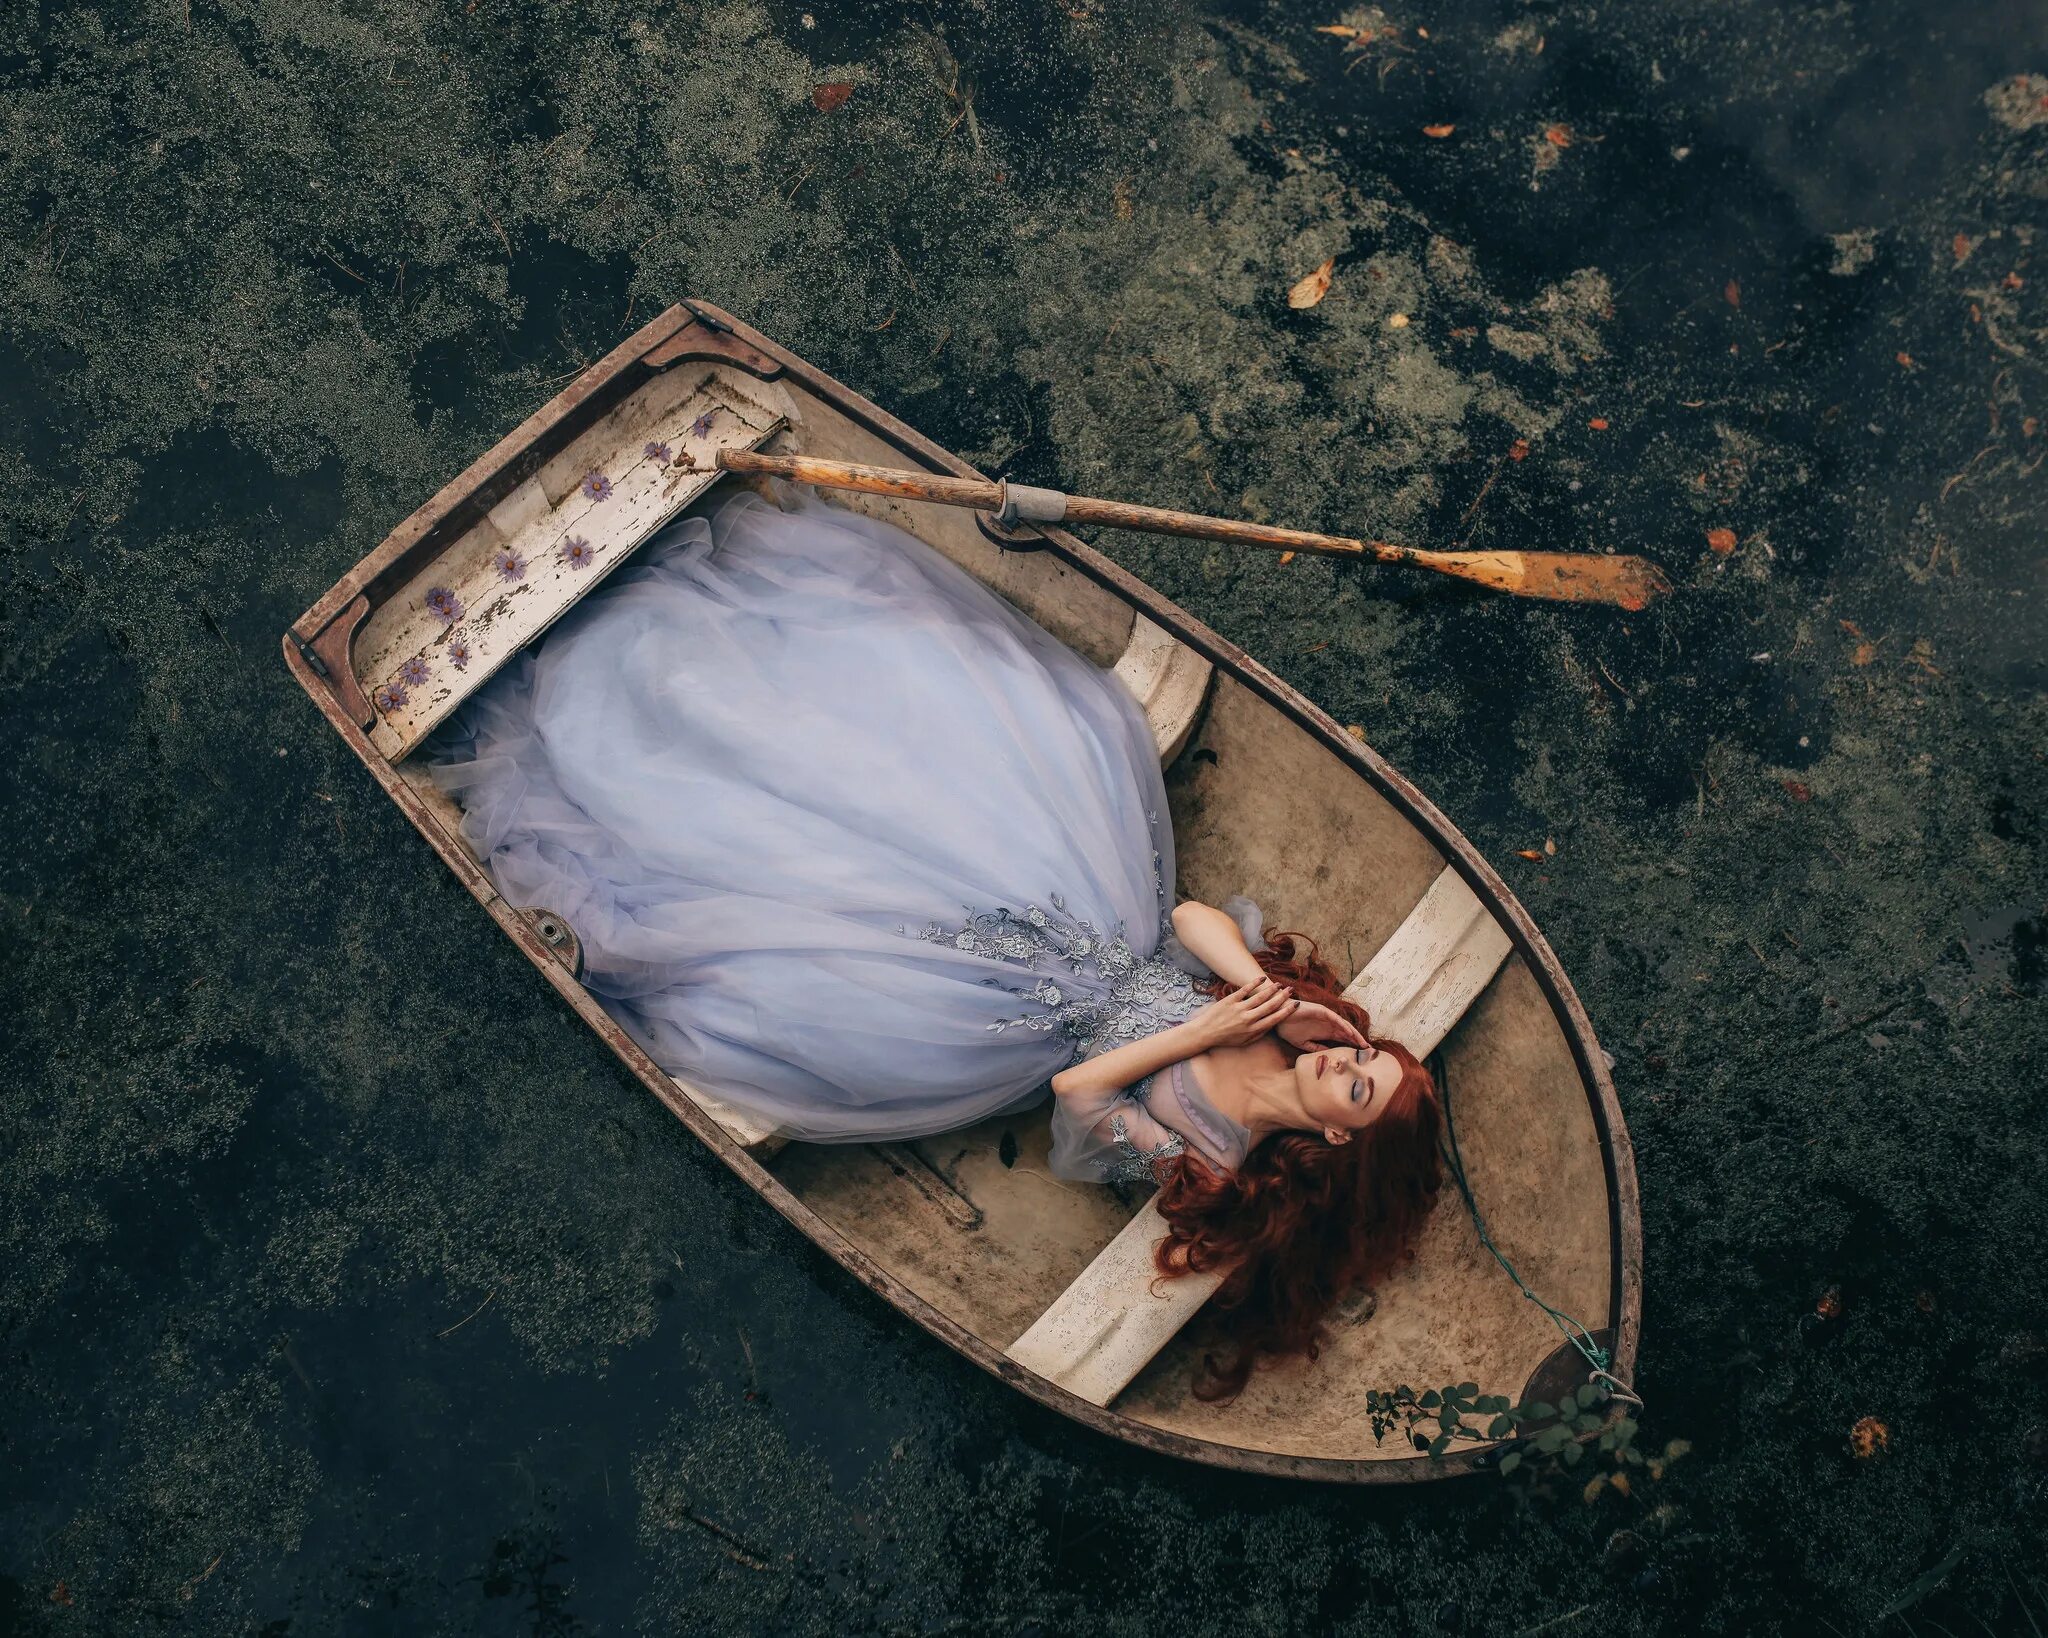 Меланхоличное состояние. Девушка в лодке. Фотосессия в лодке девушка. Девушка лежит в лодке. Фотосессия в деревянной лодке.